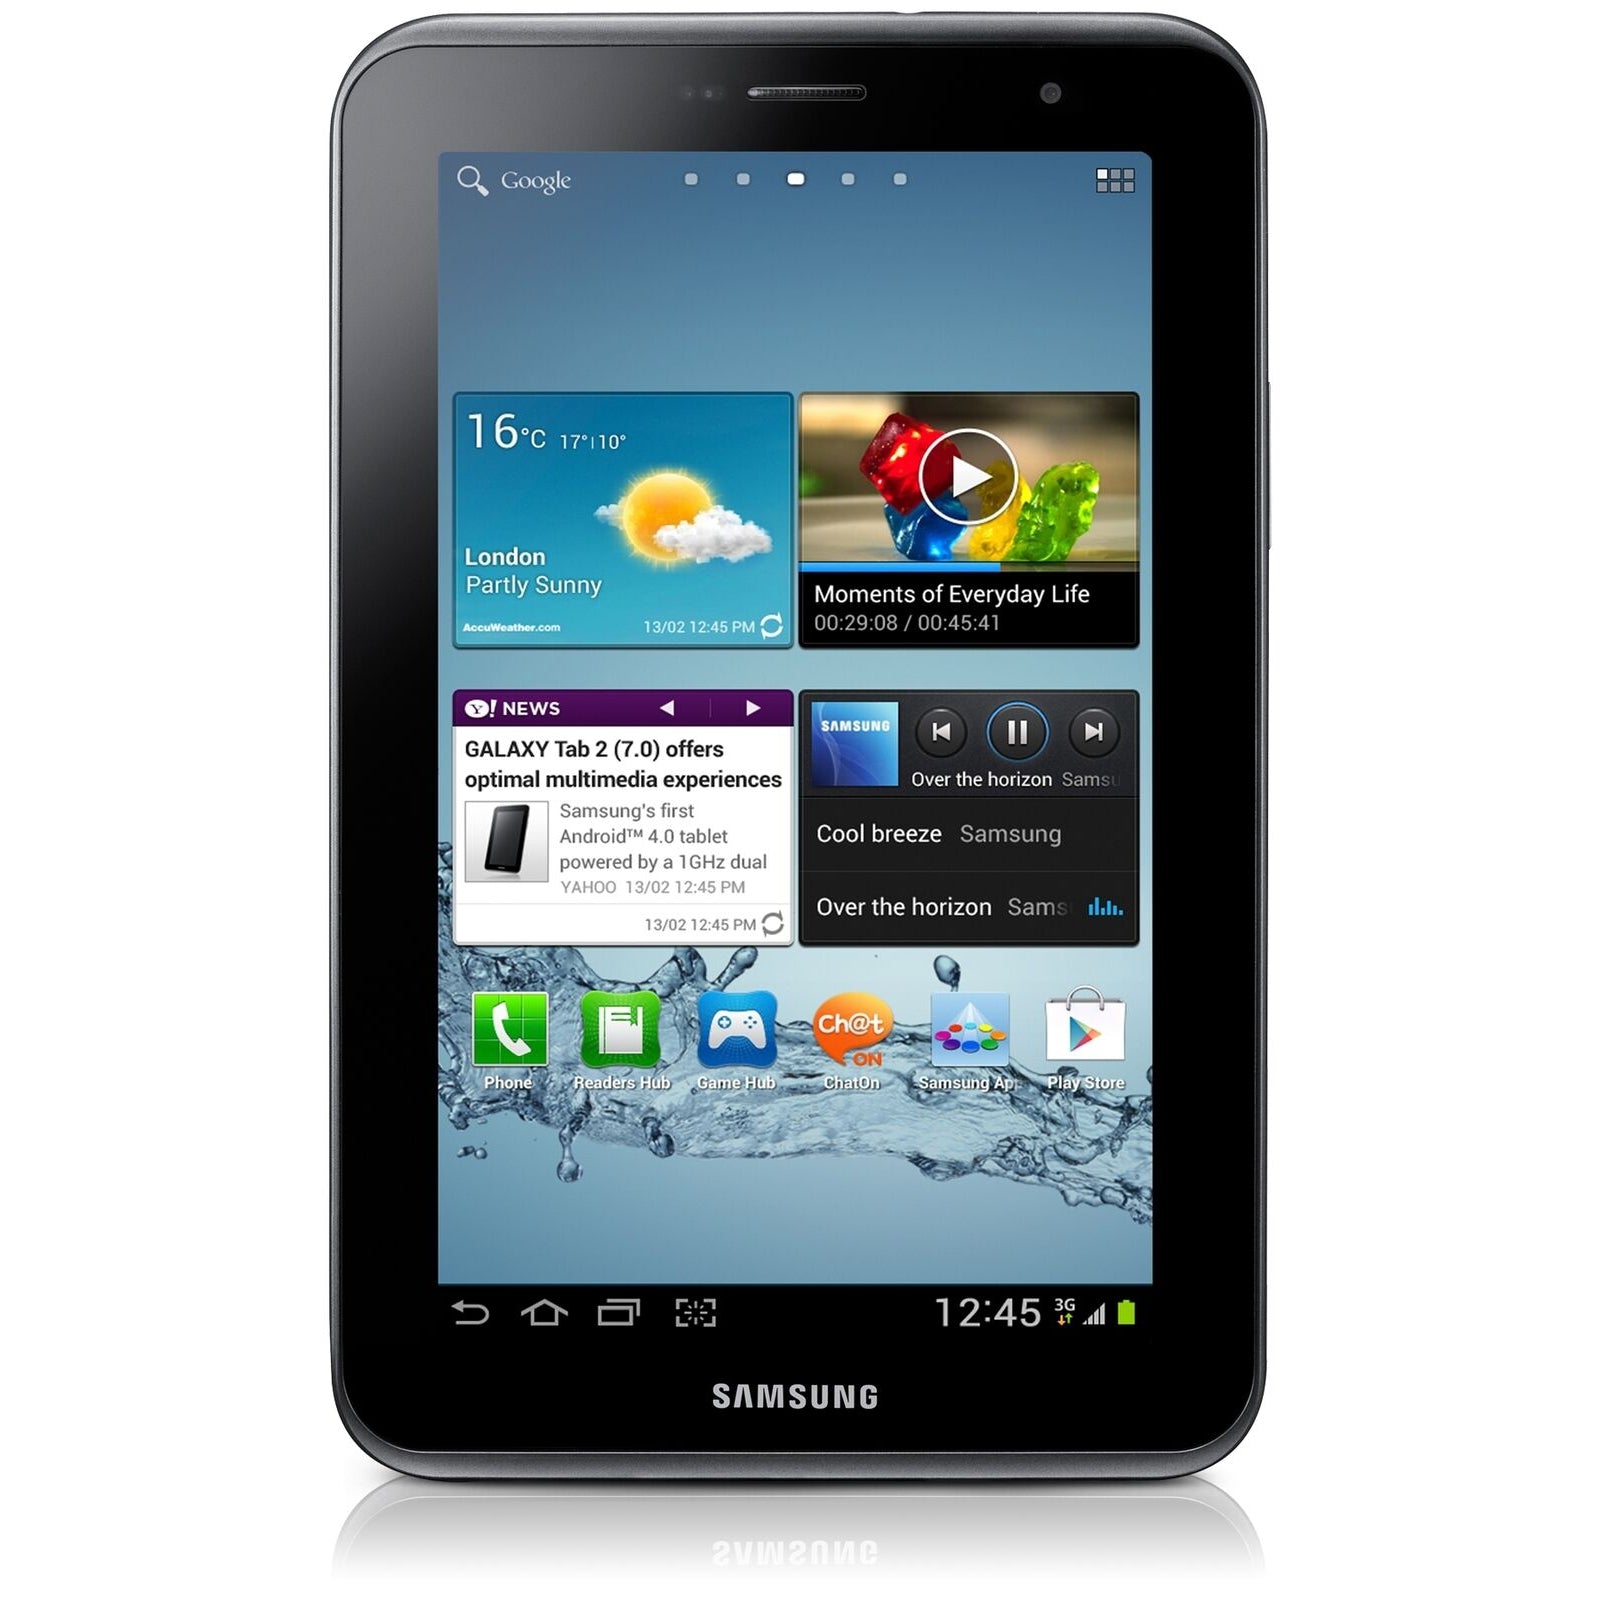 Samsung Galaxy Tab 2, 8GB 7 inch Tablet GT-P3110 White / Grey